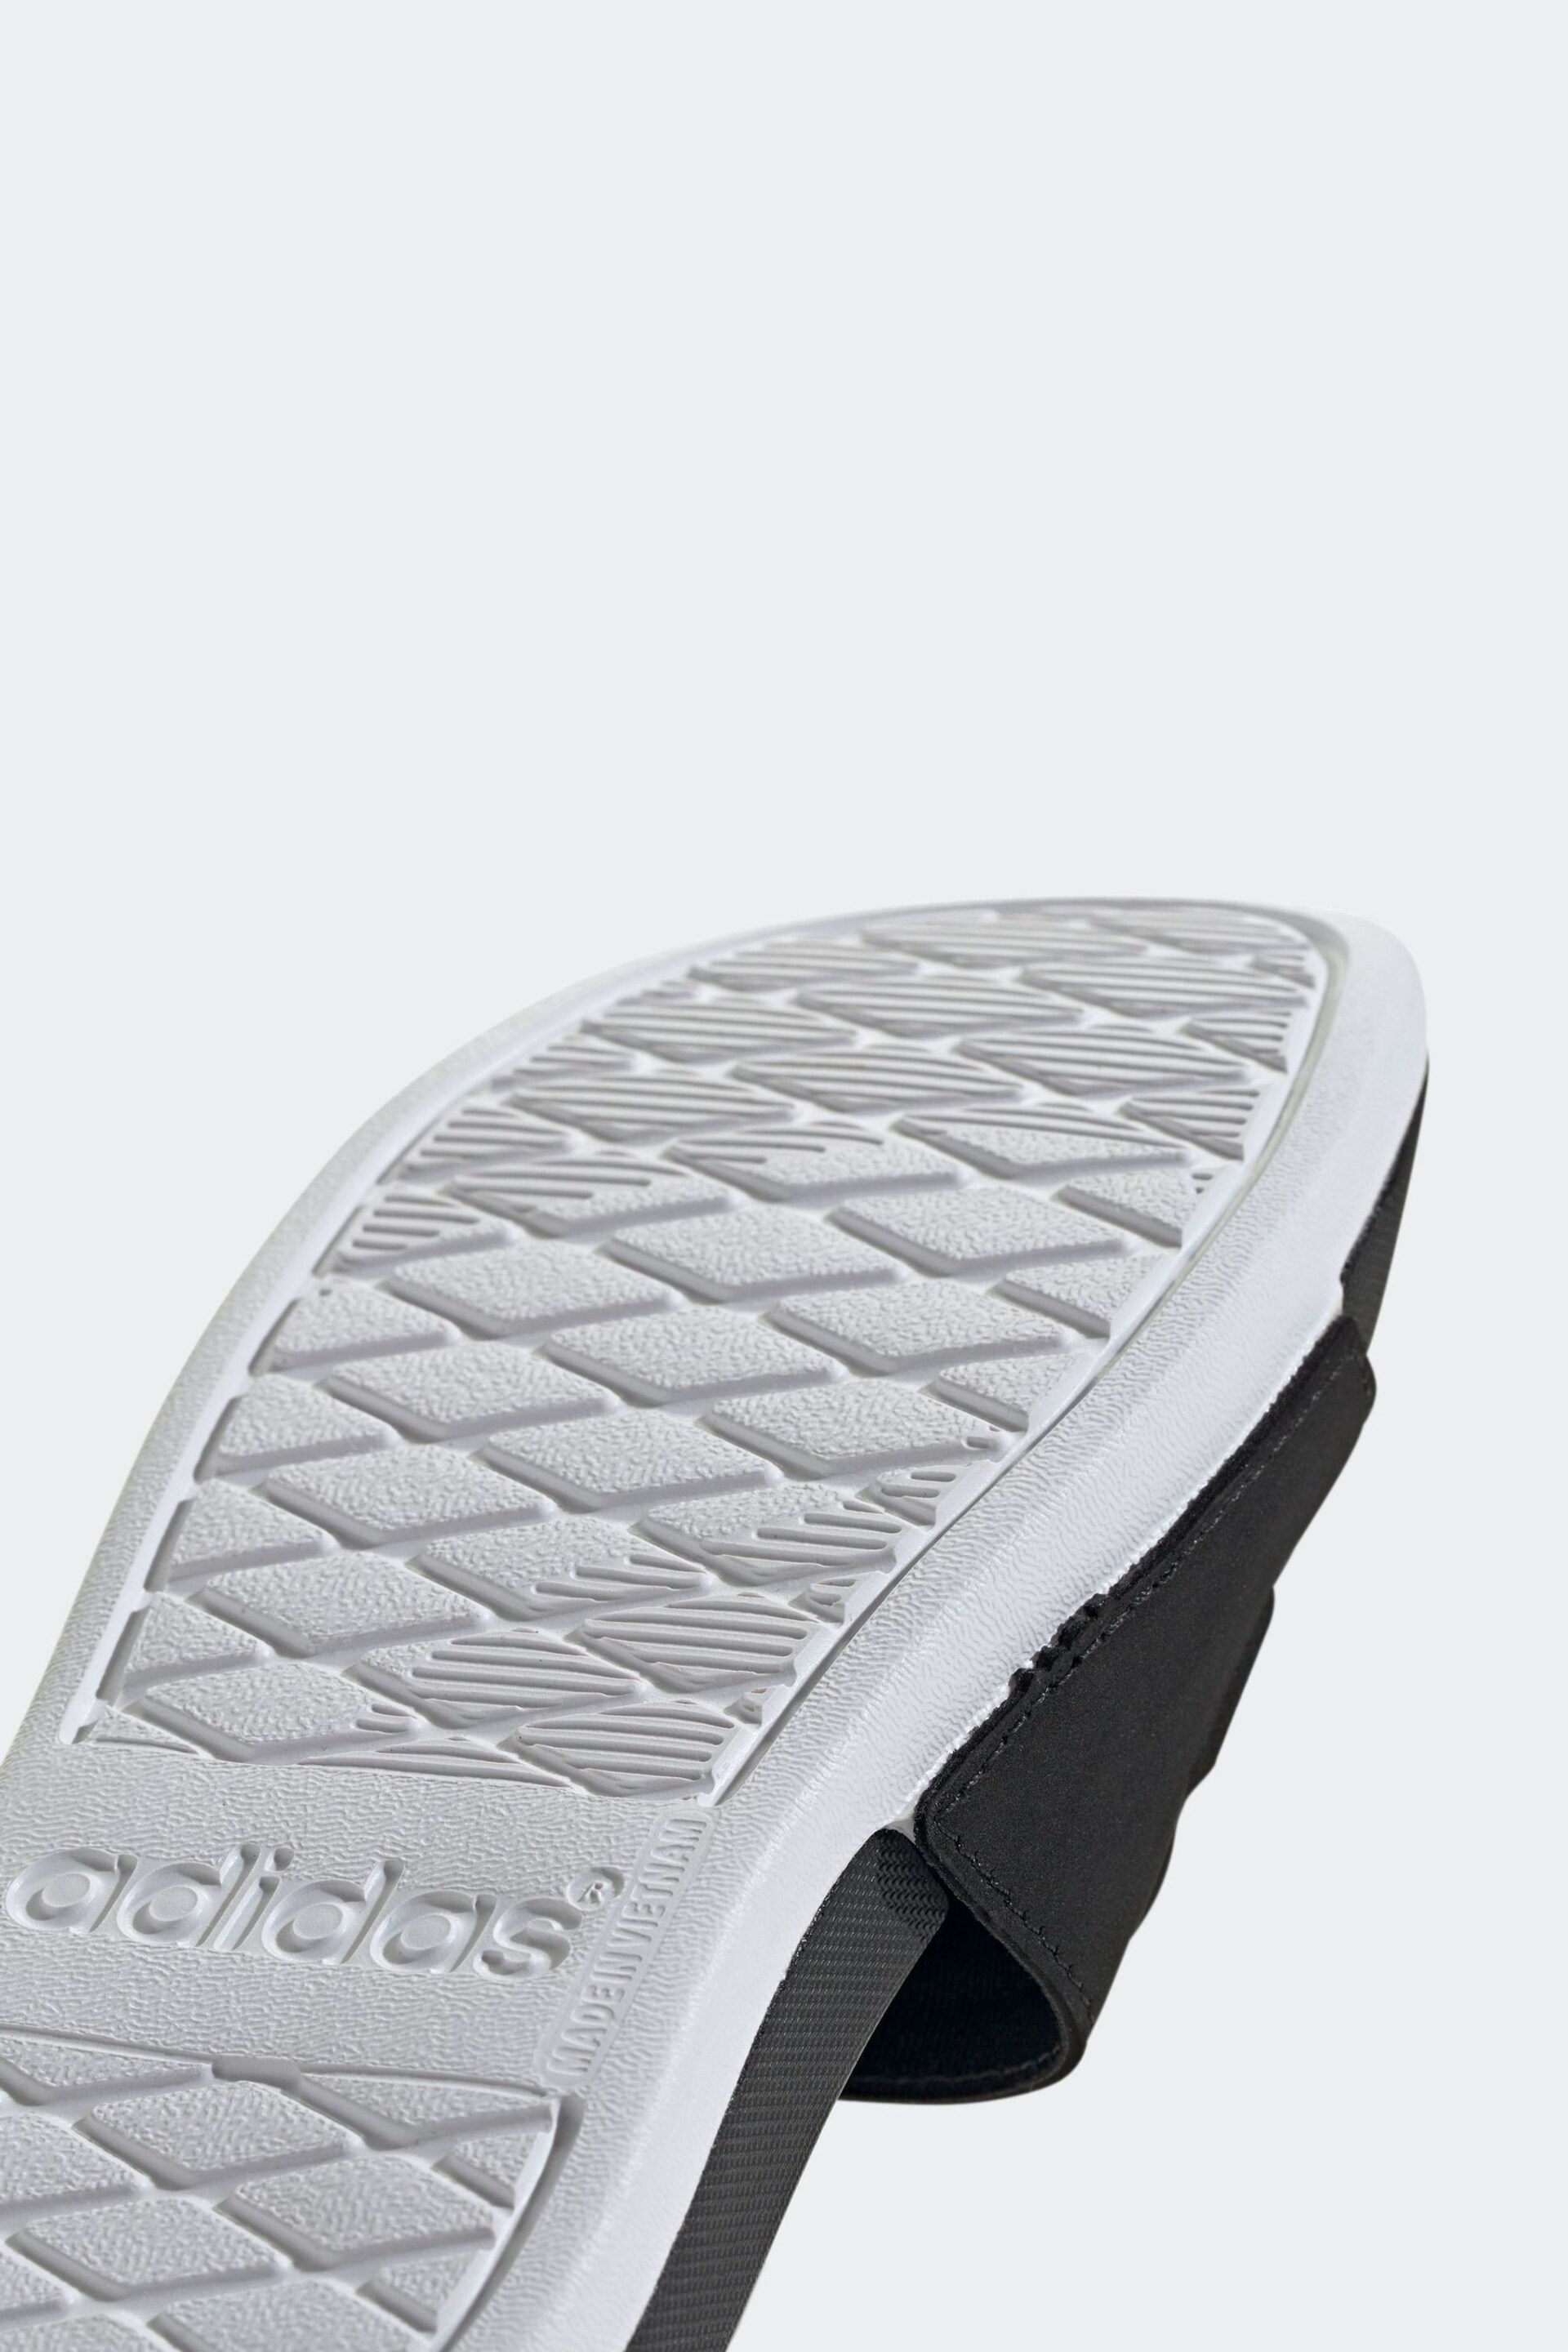 adidas Black Adilette Comfort Star Wars Sandals - Image 9 of 9